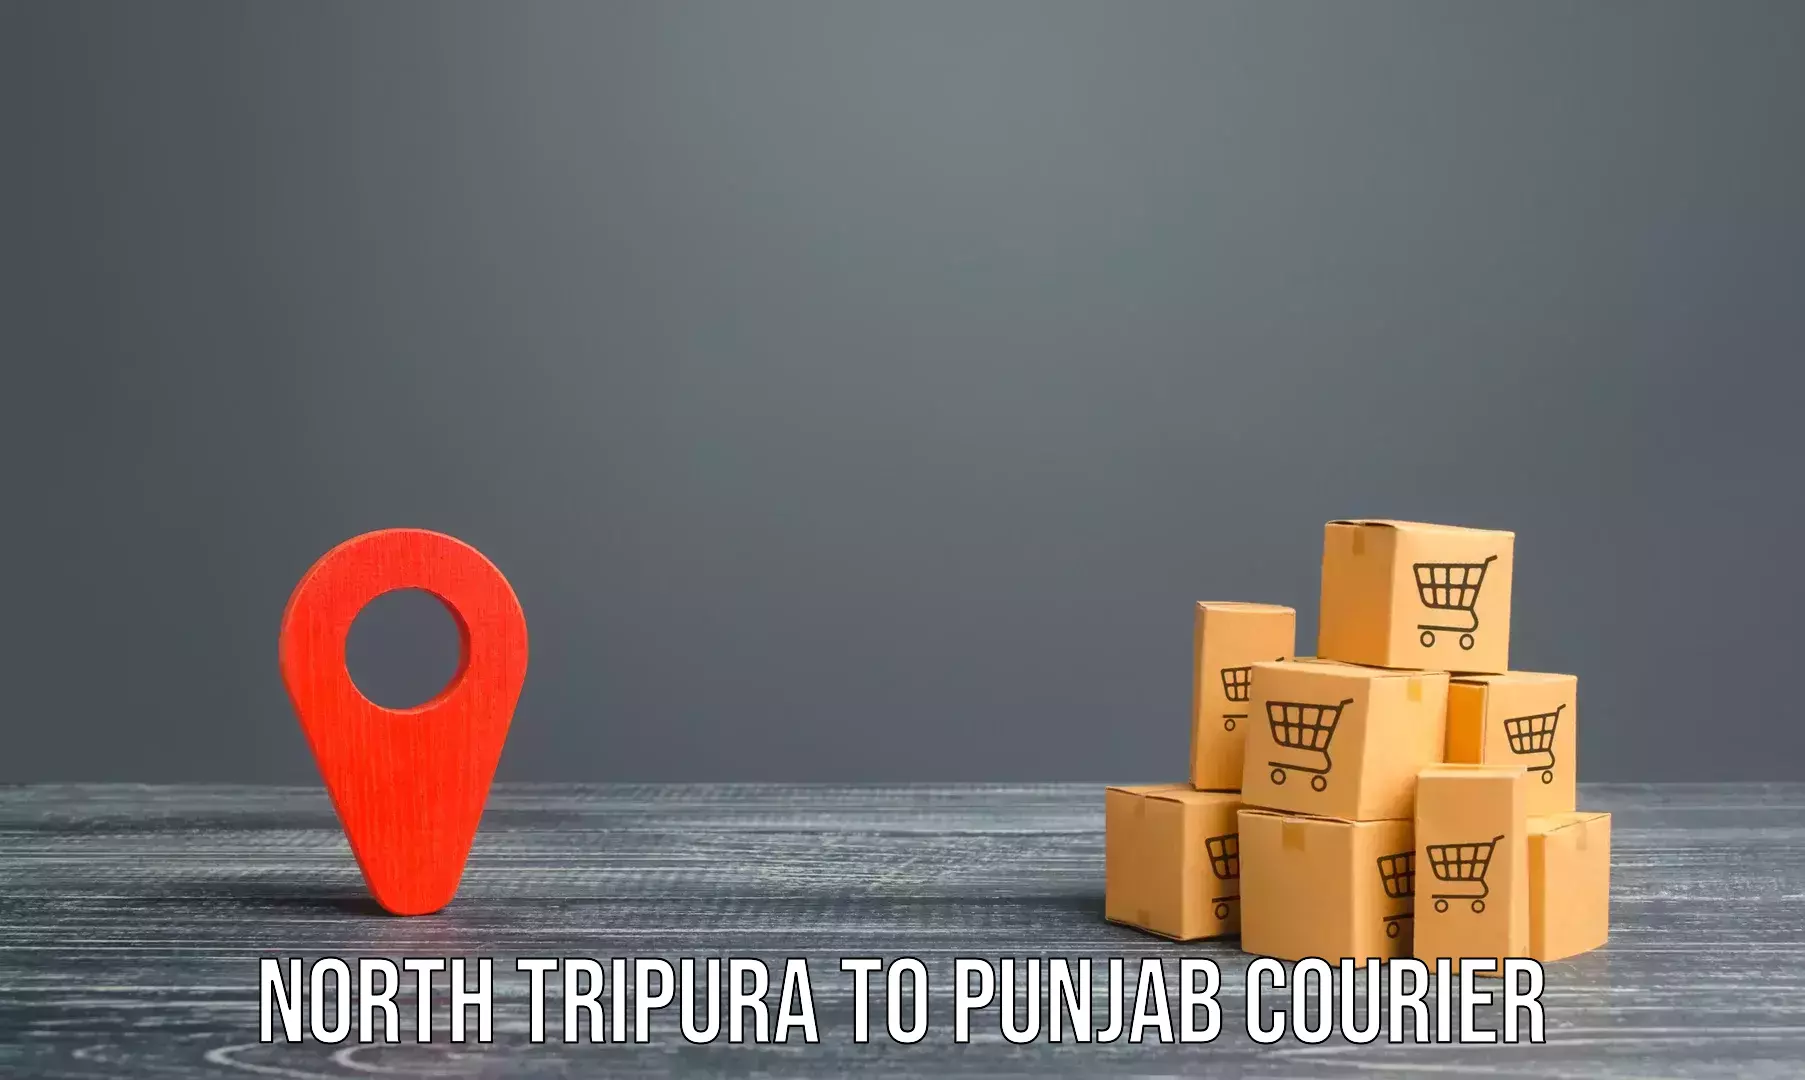 Furniture transport specialists North Tripura to Fazilka